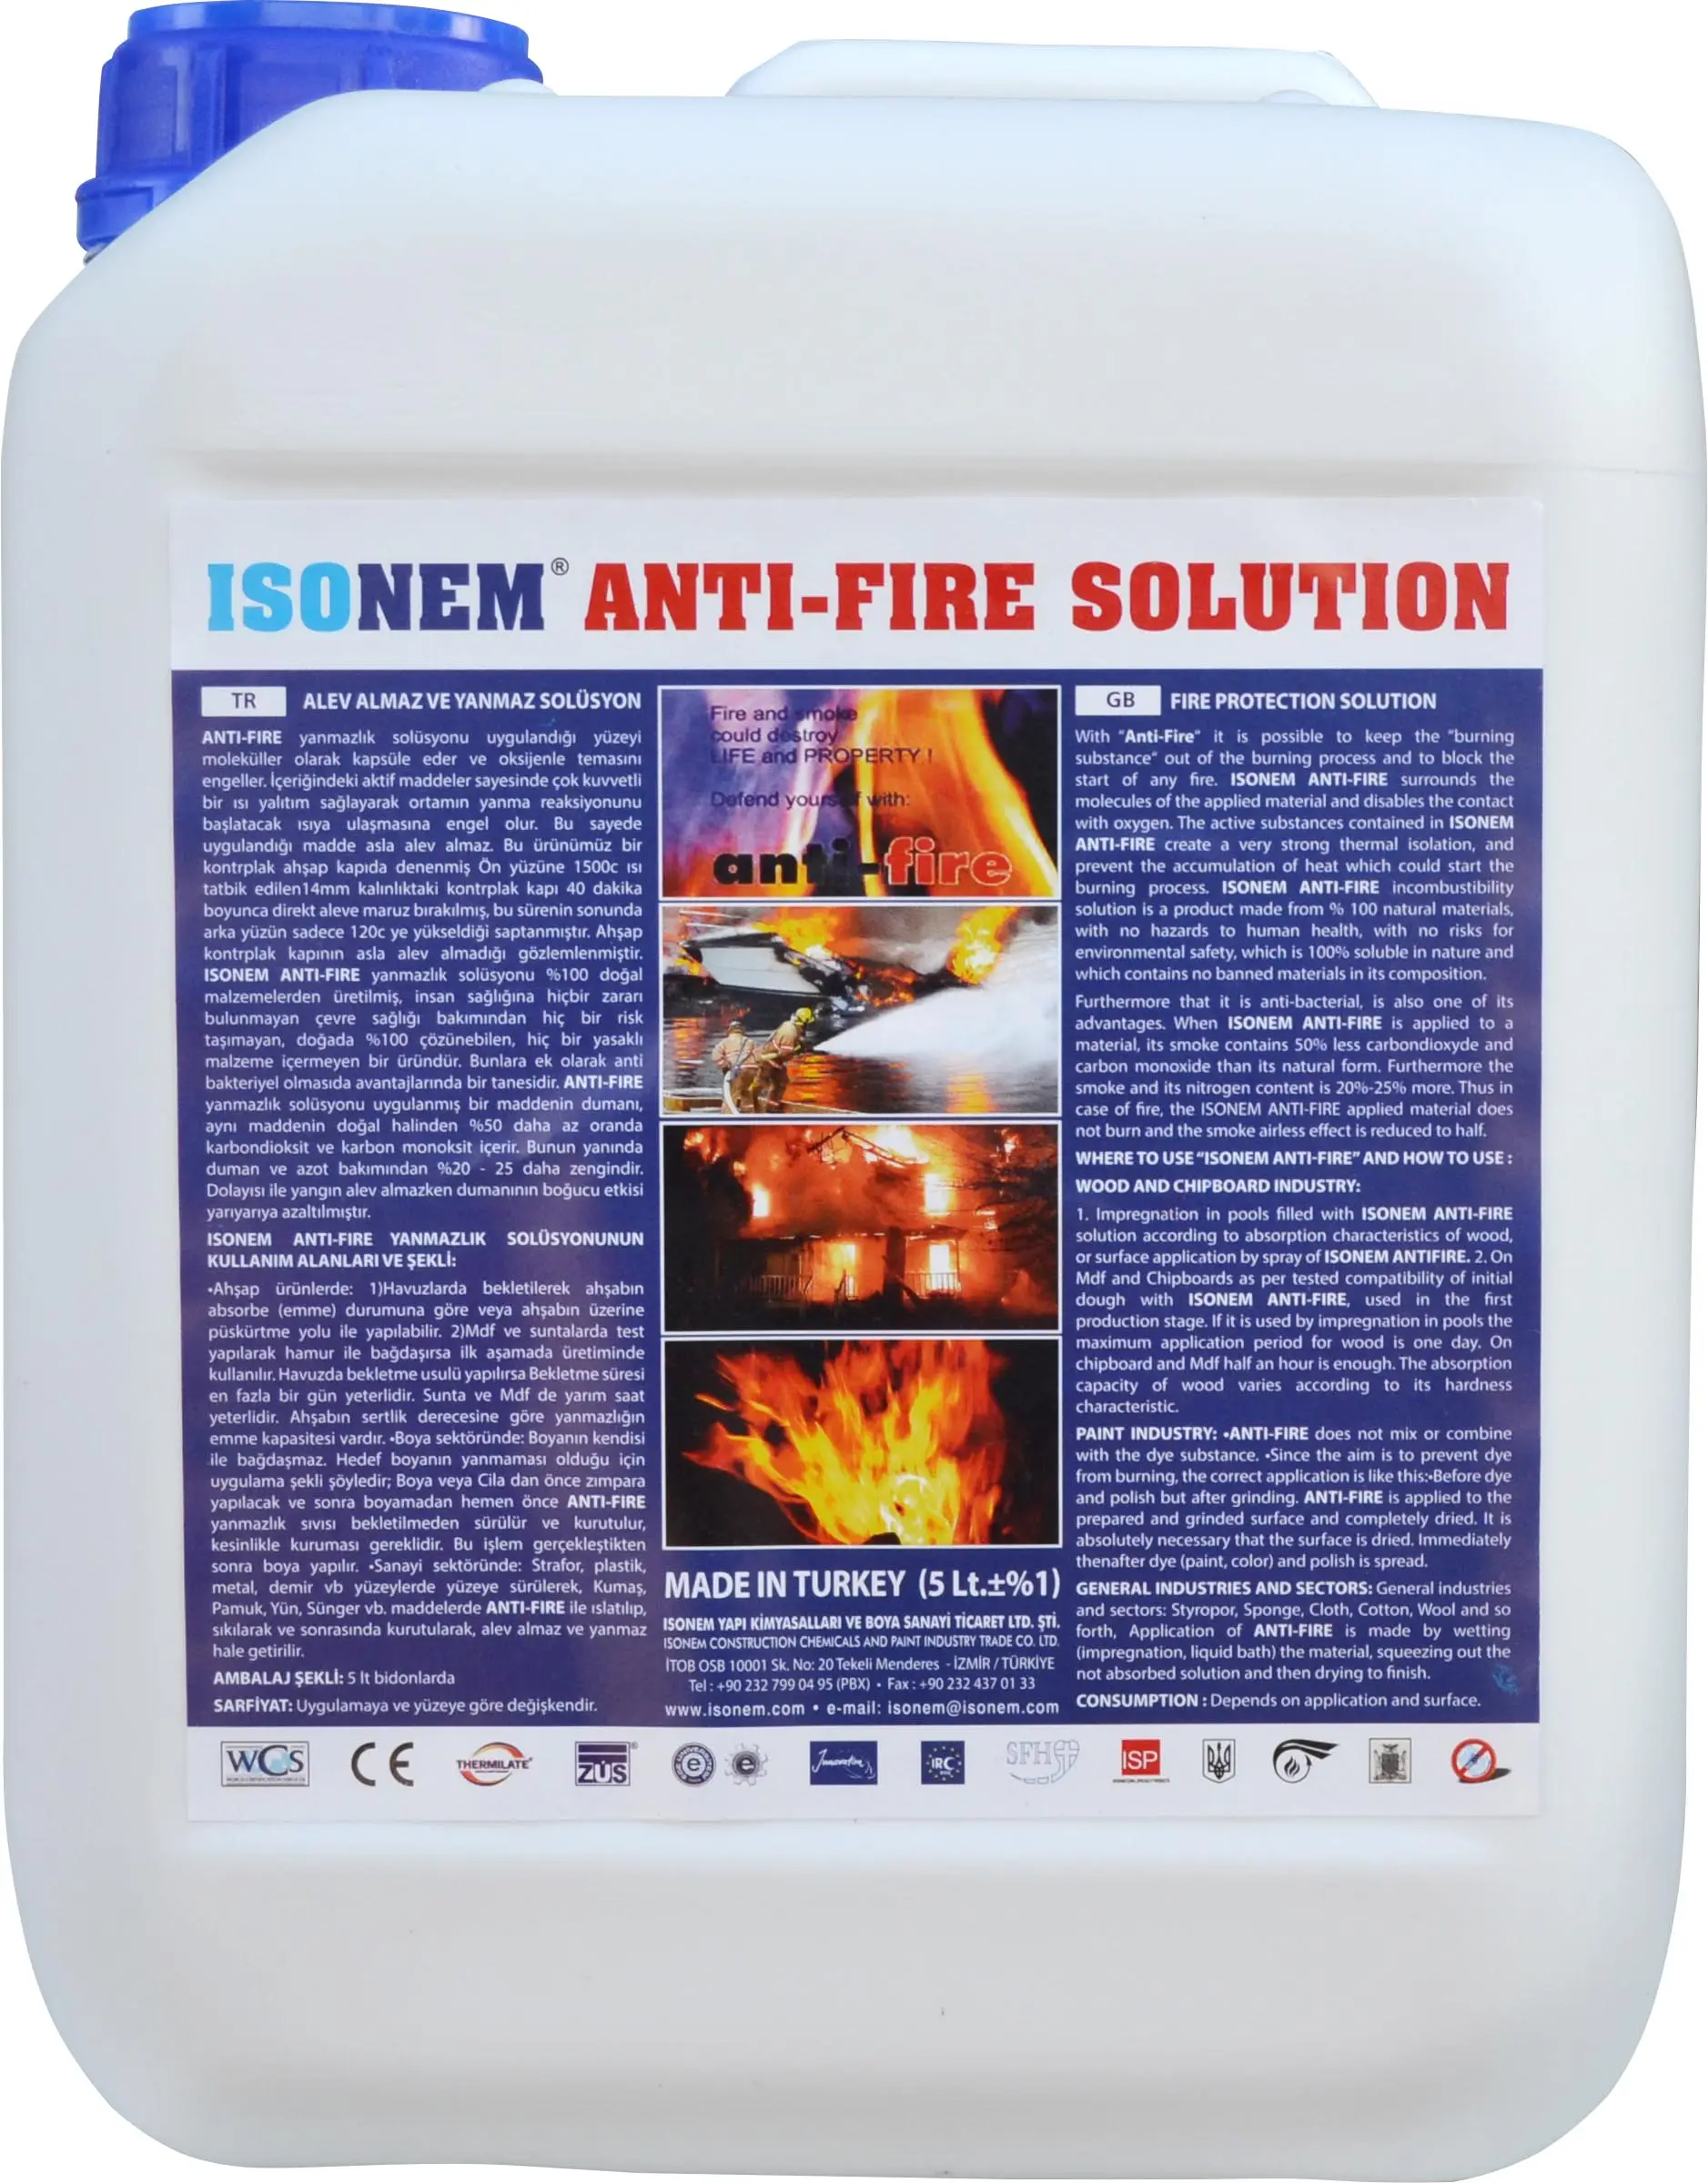 ISONEM विरोधी आग समाधान, आग RETARDANT रासायनिक के लिए कपड़े, कागज, लकड़ी, के लिए किसी भी शोषक सतहों